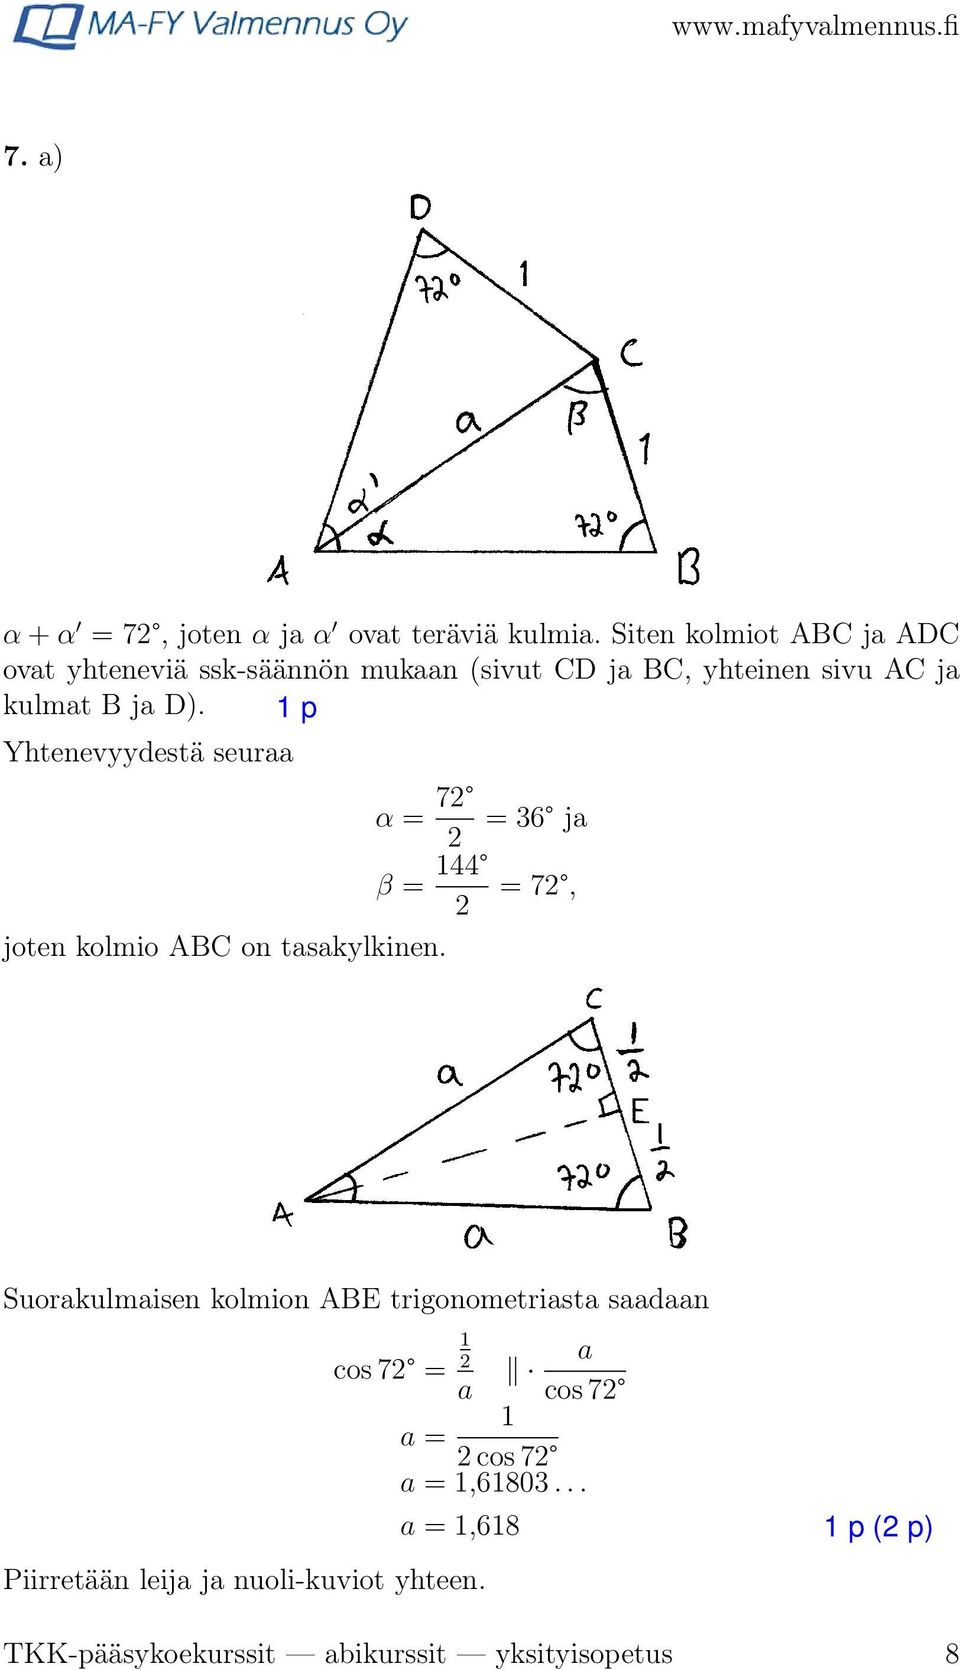 D). Yhtenevyydestä seuraa α = 7 = 36 ja β = 44 = 7, joten kolmio ABC on tasakylkinen.